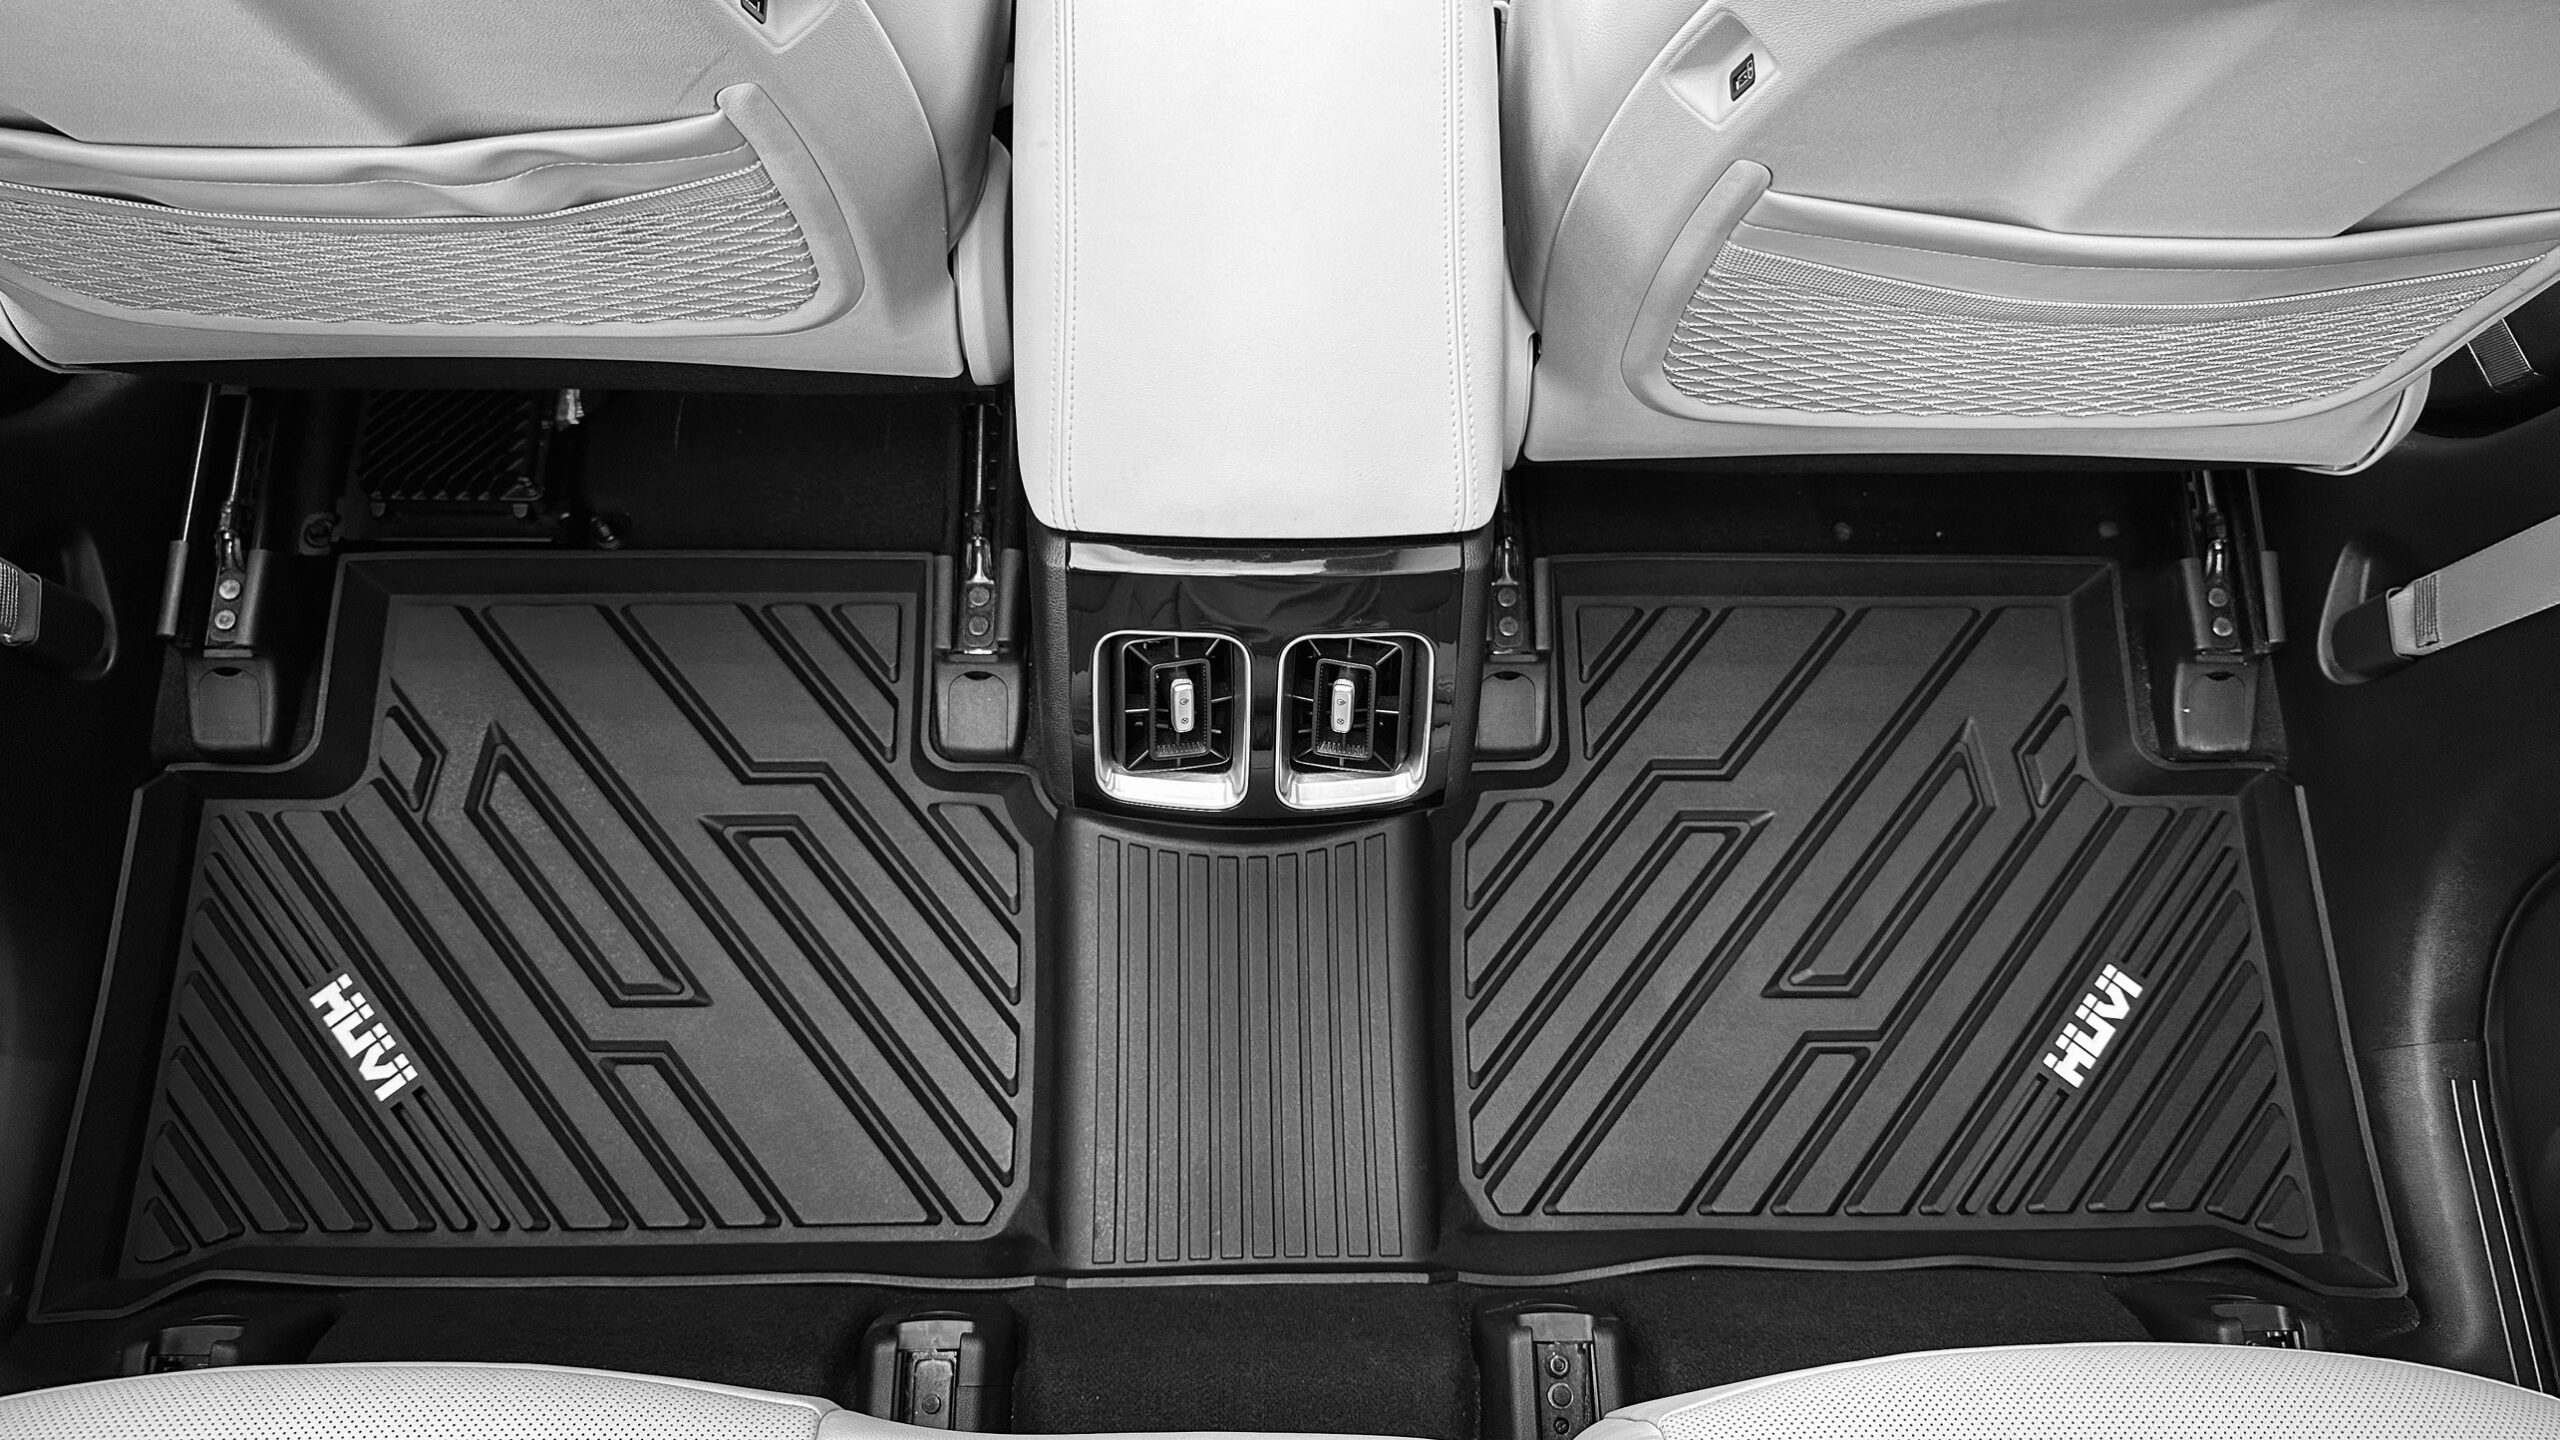 Thảm trải sàn ô tô 3D giúp tăng tính sang trọng cho nội thất.